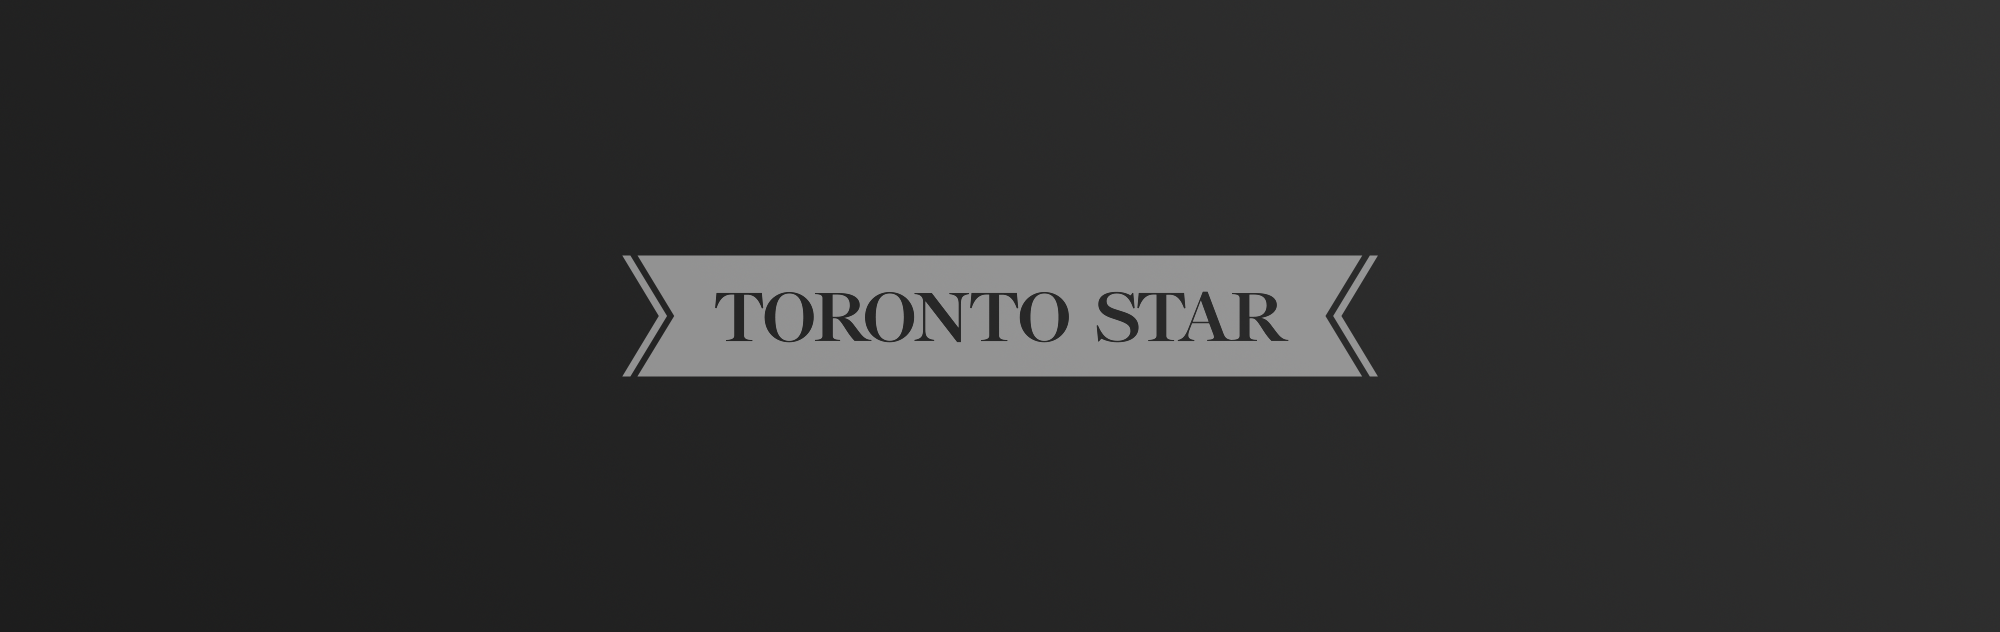 AGP-LLP_Media_Toronto_Star_Header